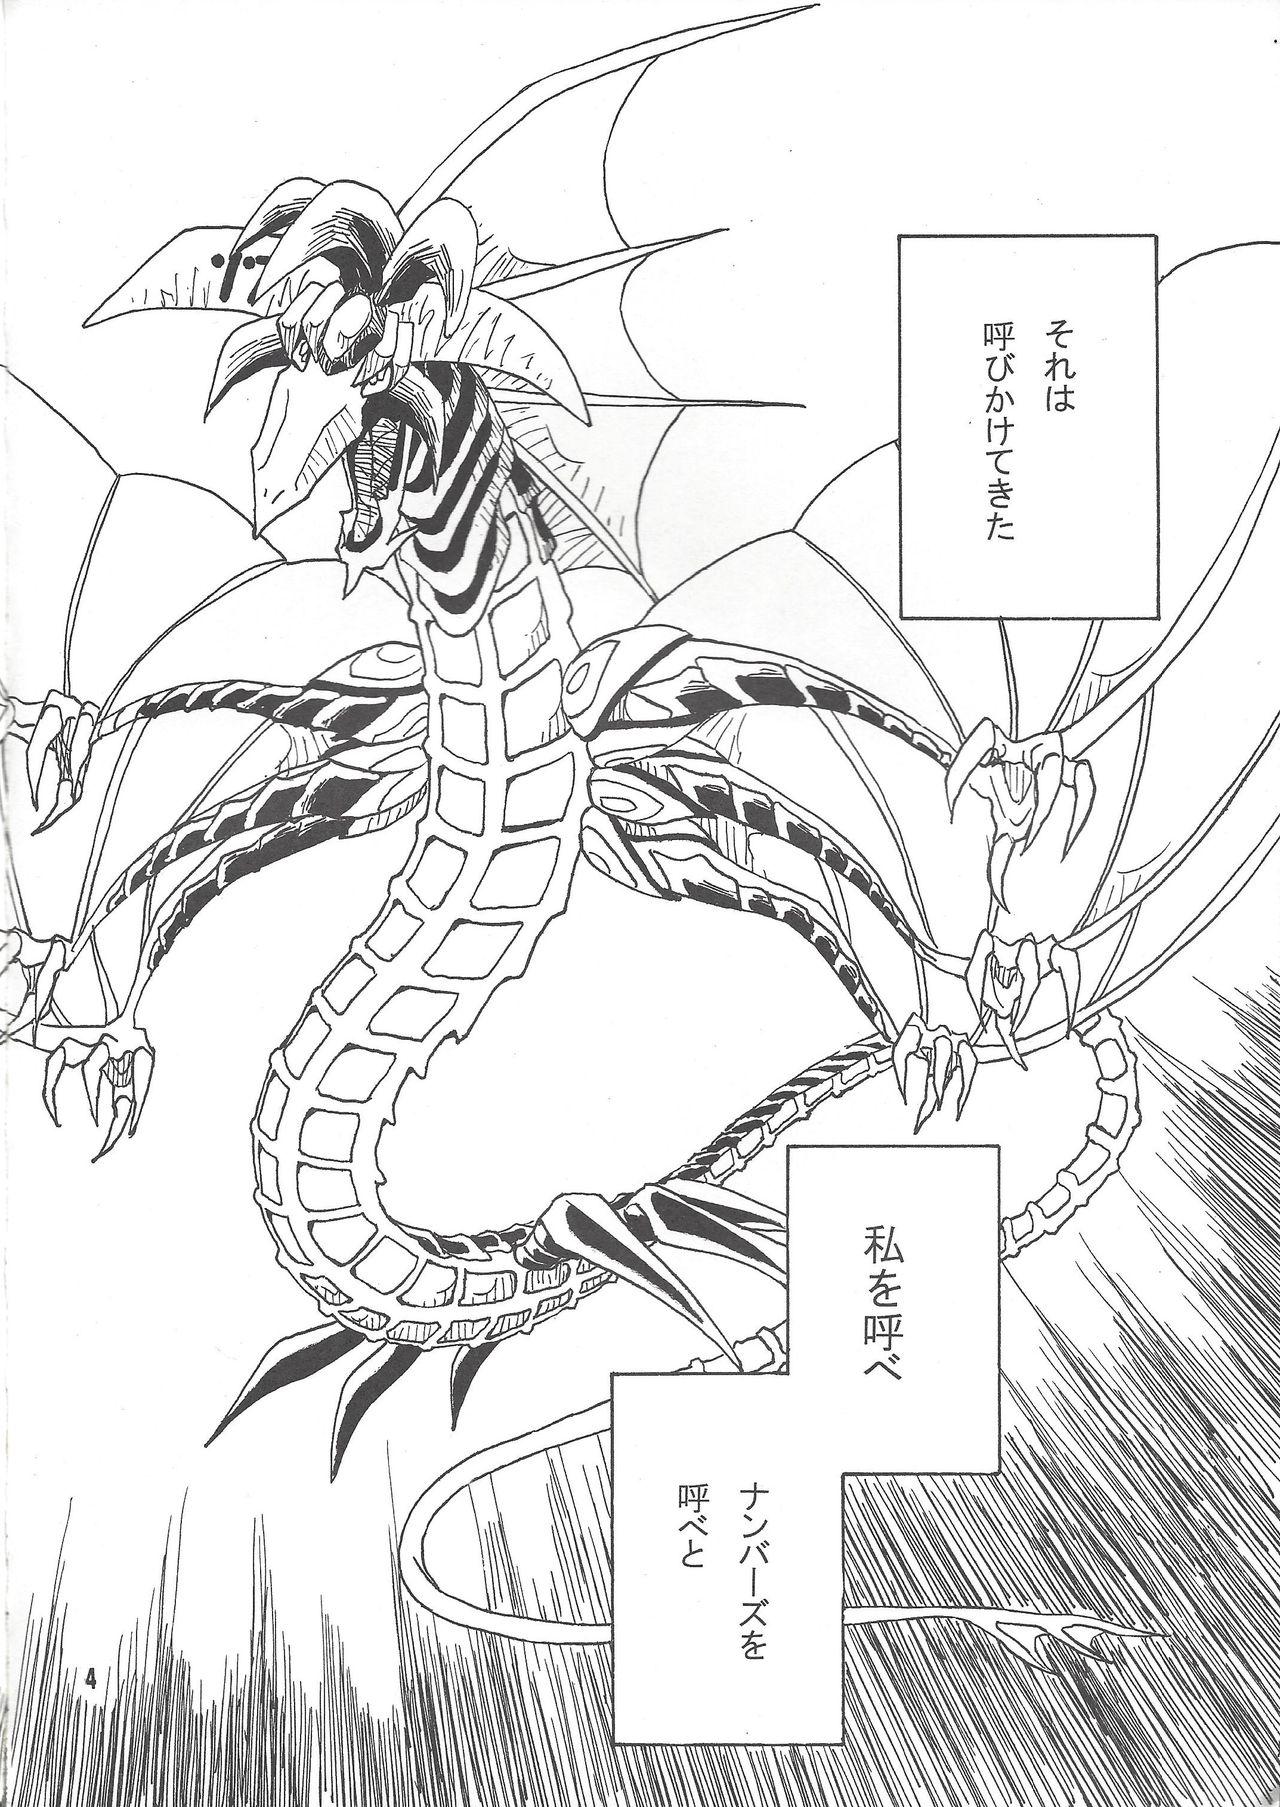 Workout Leviathan no Fukushuu - Yu-gi-oh zexal Foot Job - Page 3